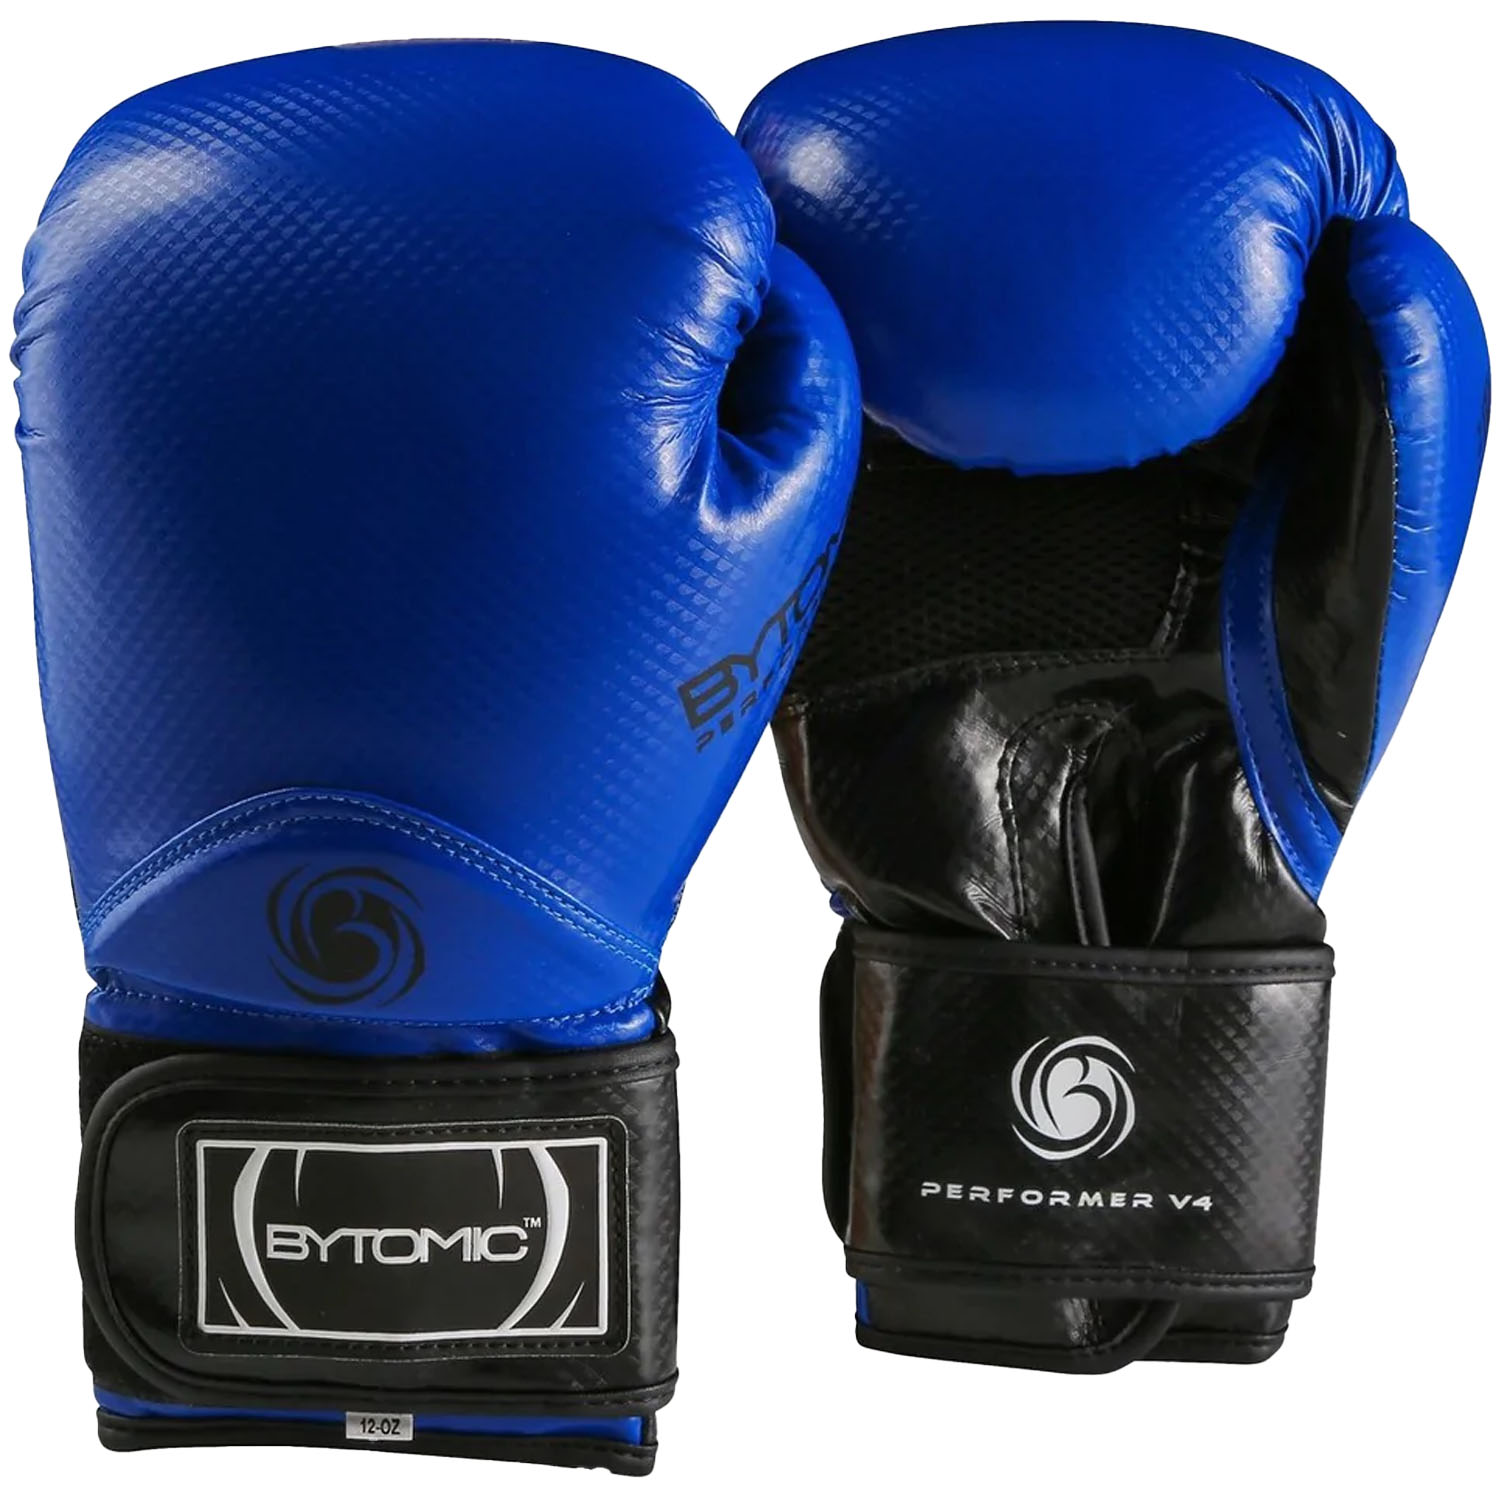 Bytomic Boxing Gloves, Performer, V4, blue, 10 Oz